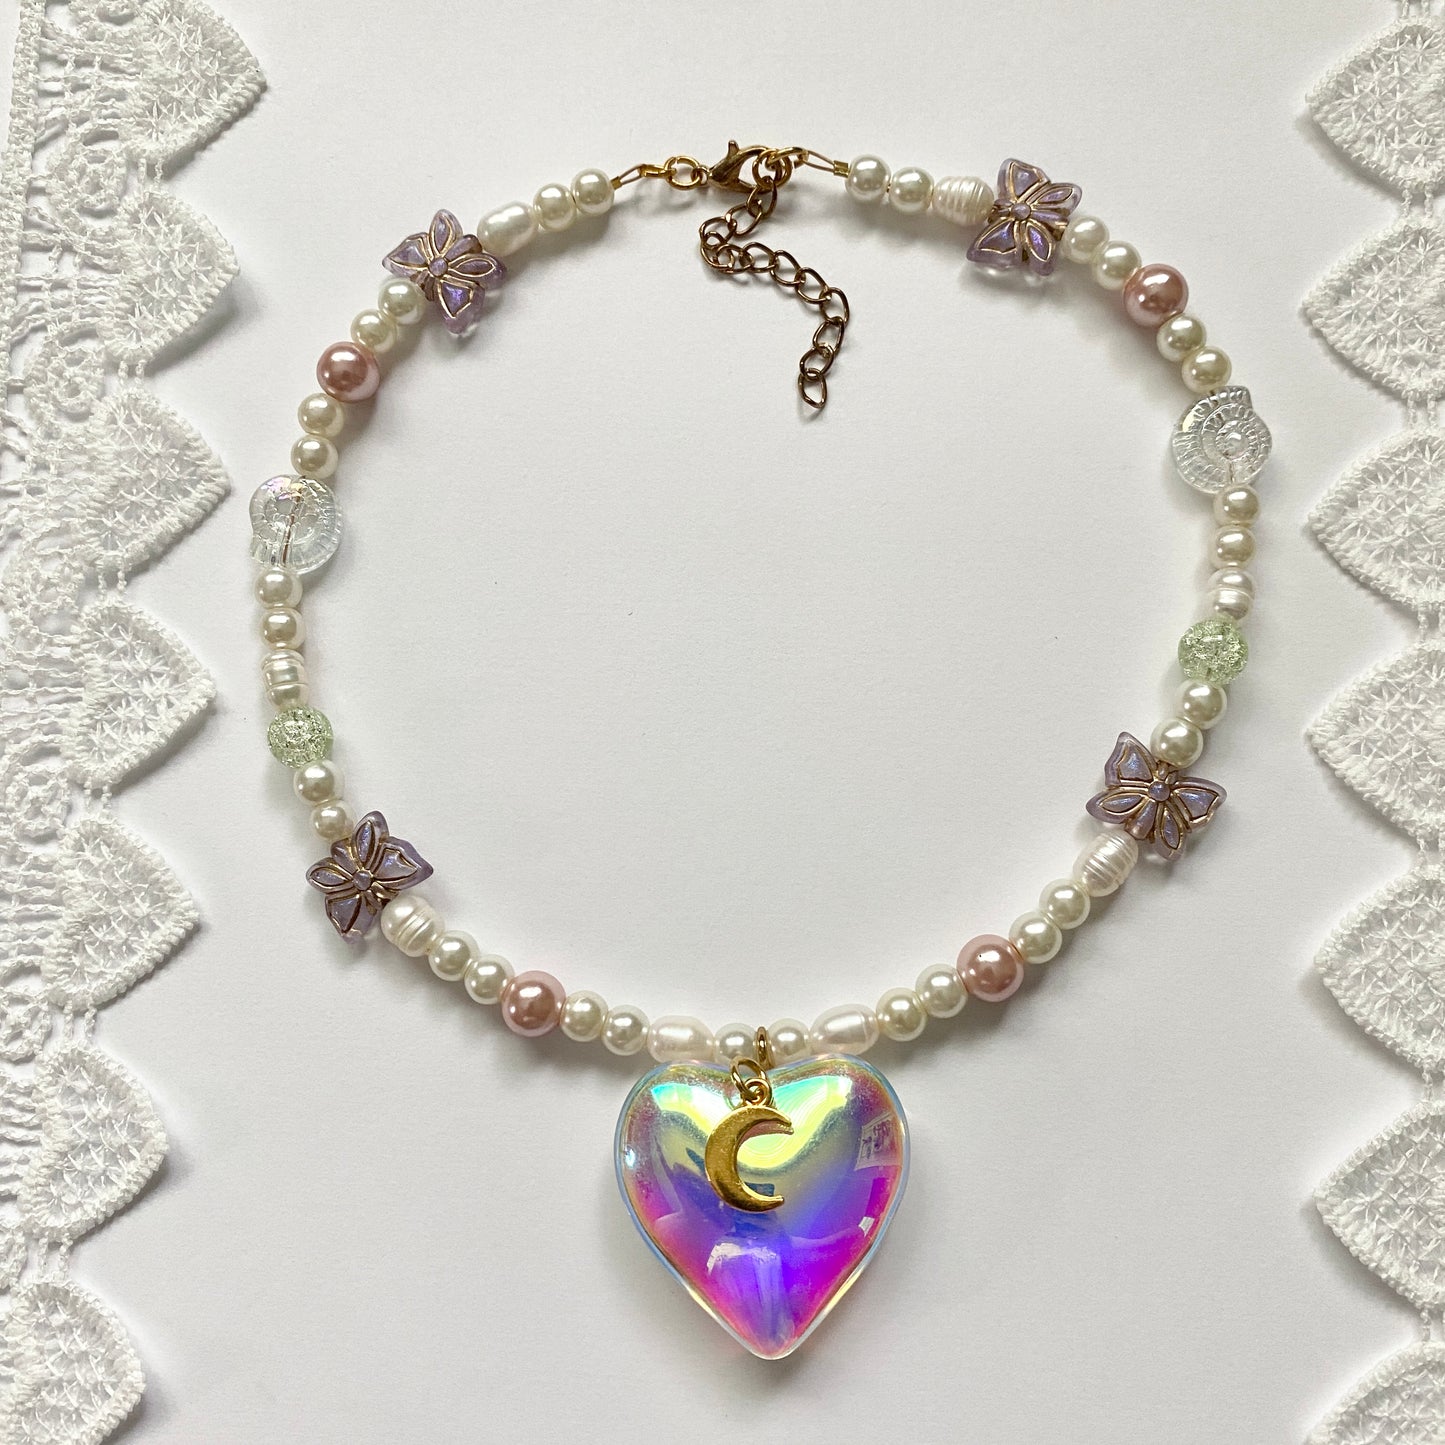 ‘blossom’ necklace